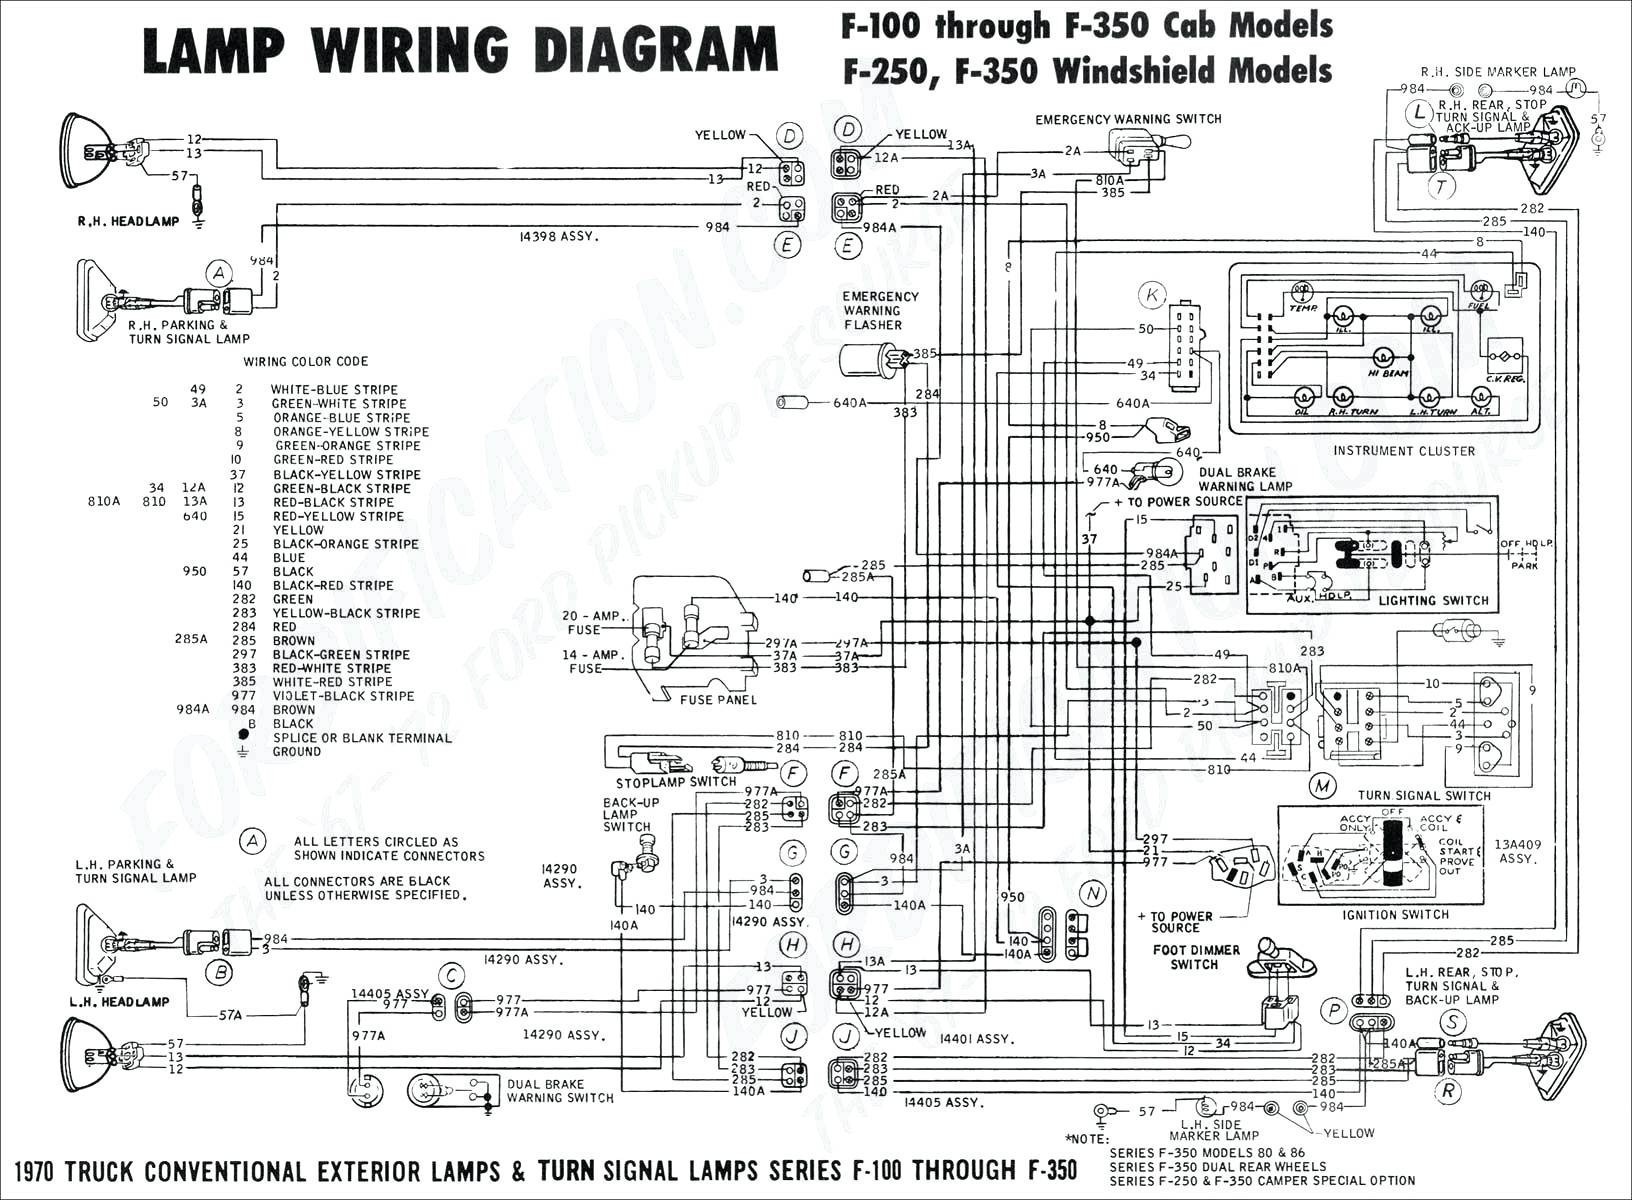 Car Audio Amplifier Wiring Diagram Audio Amplifier Wiring Diagram Of Car Audio Amplifier Wiring Diagram